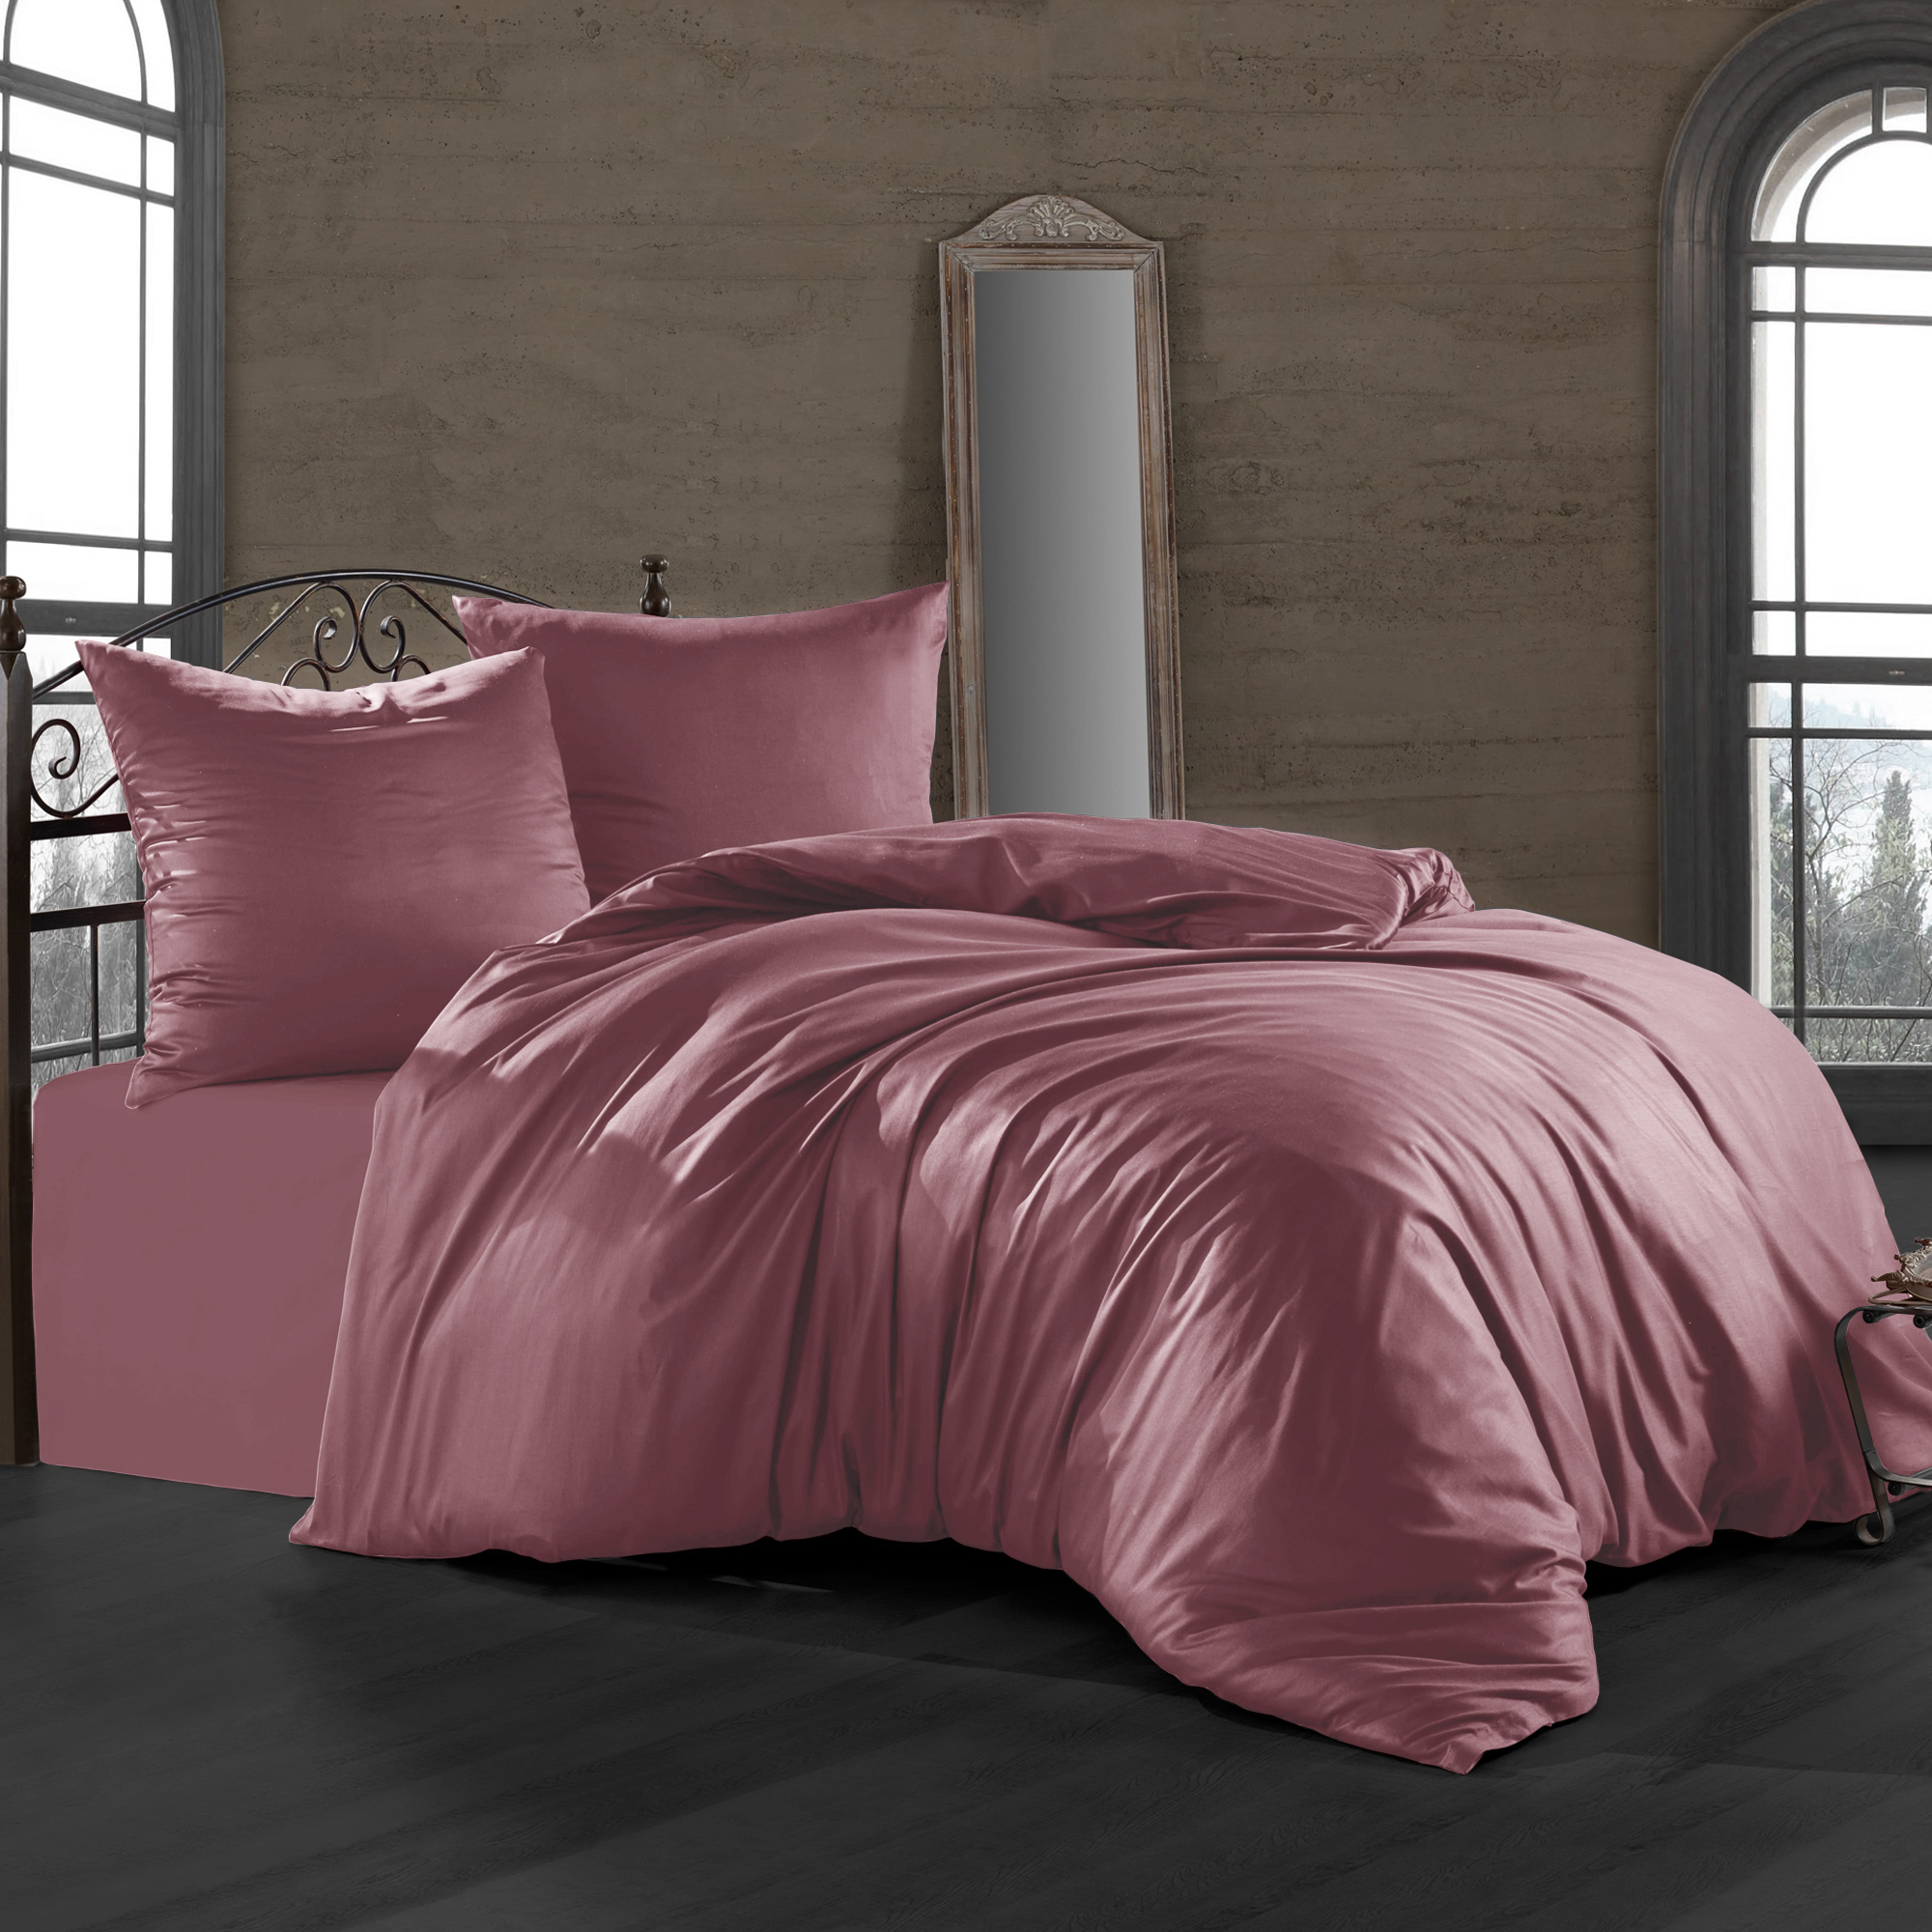 Комплект постельного белья Bahar пепельно-розовый Семейный/дуэт комплект постельного белья bahar белый полуторный